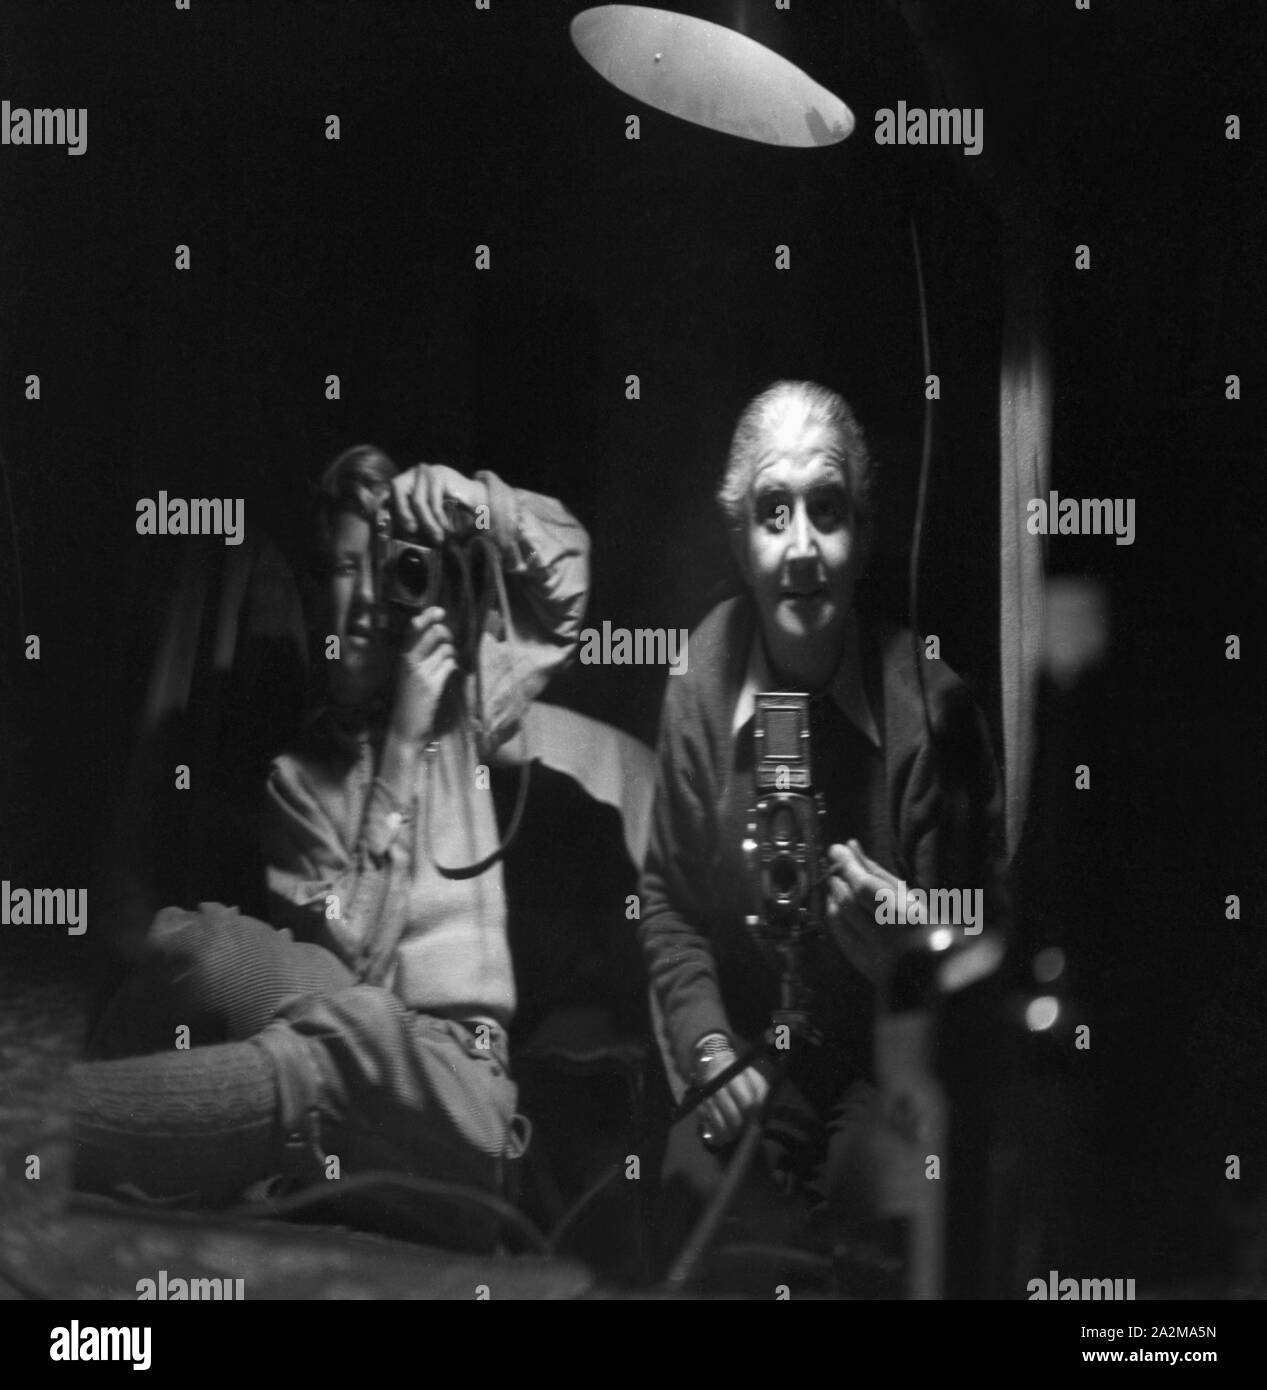 Zwei Fotografen fotografieren sich selbst, einer mit einer Kleinbildkamera, der andere mit der Rolleiflex für Mittelformat, Deutschland 1940. Two photographers taking a picture of themselves, Germany 1940. Stock Photo